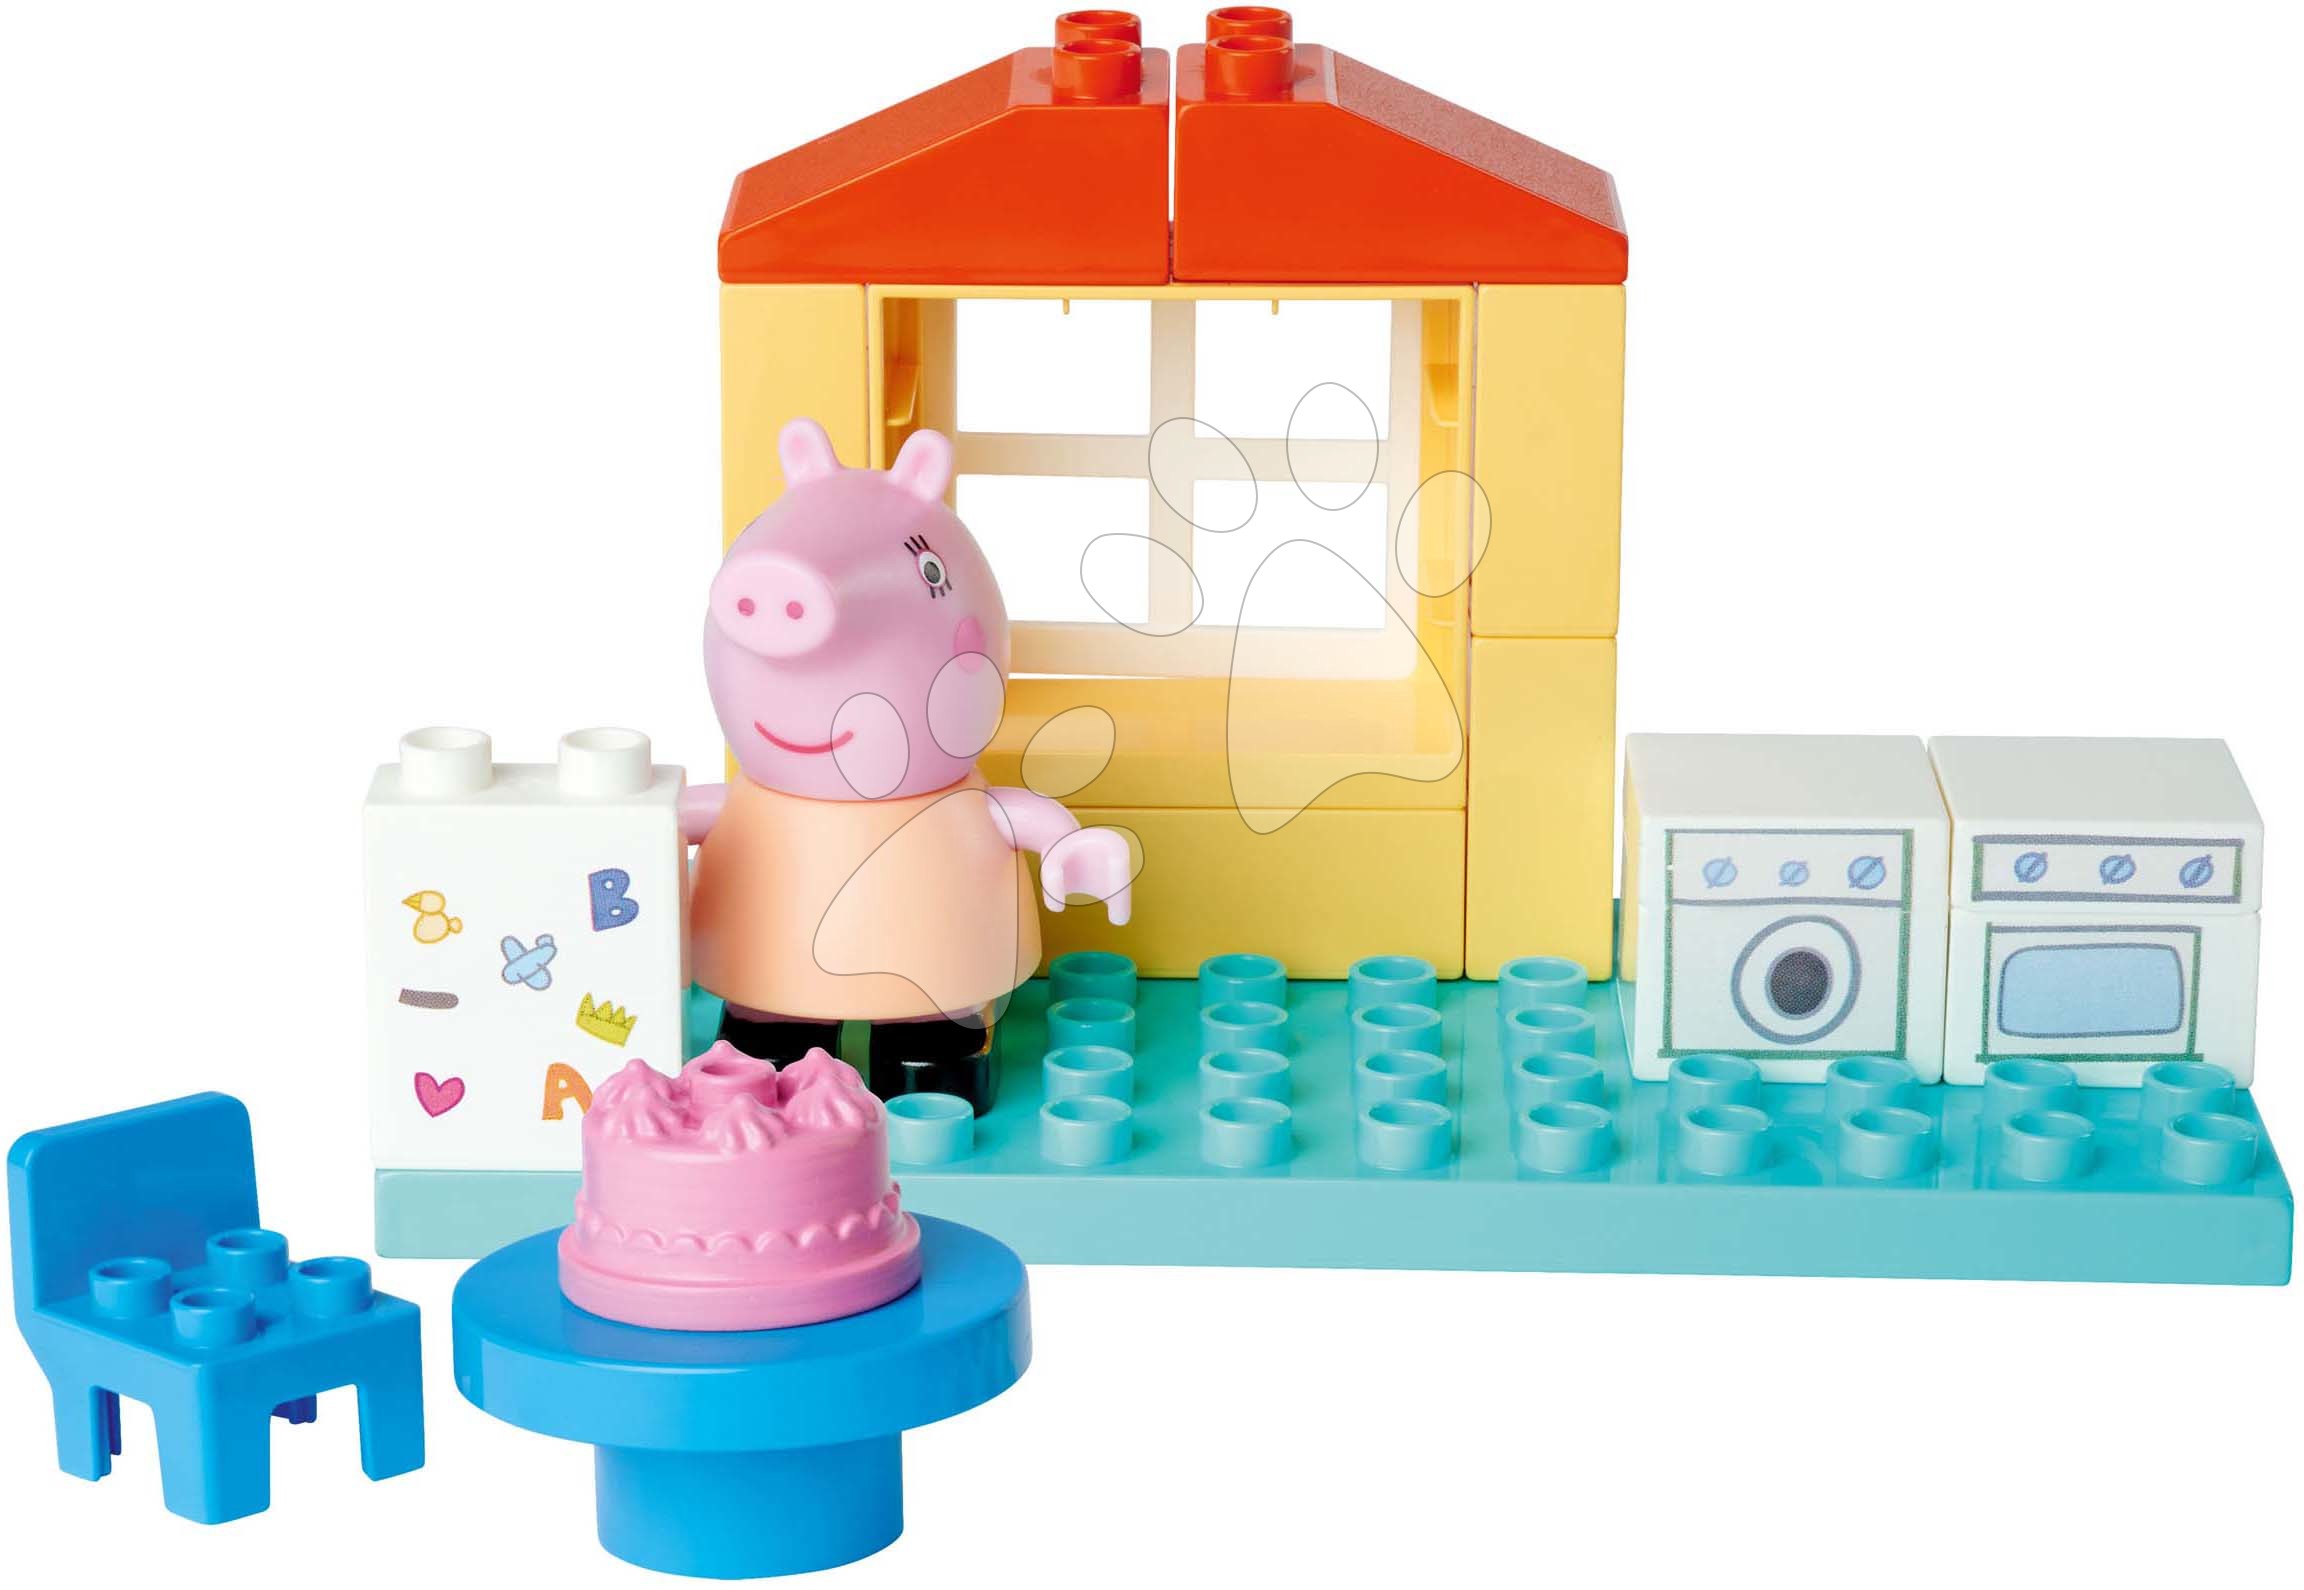 Építőjáték Peppa Pig Basic Set PlayBig Bloxx BIG konyha figurával 1,5-5 évesnek